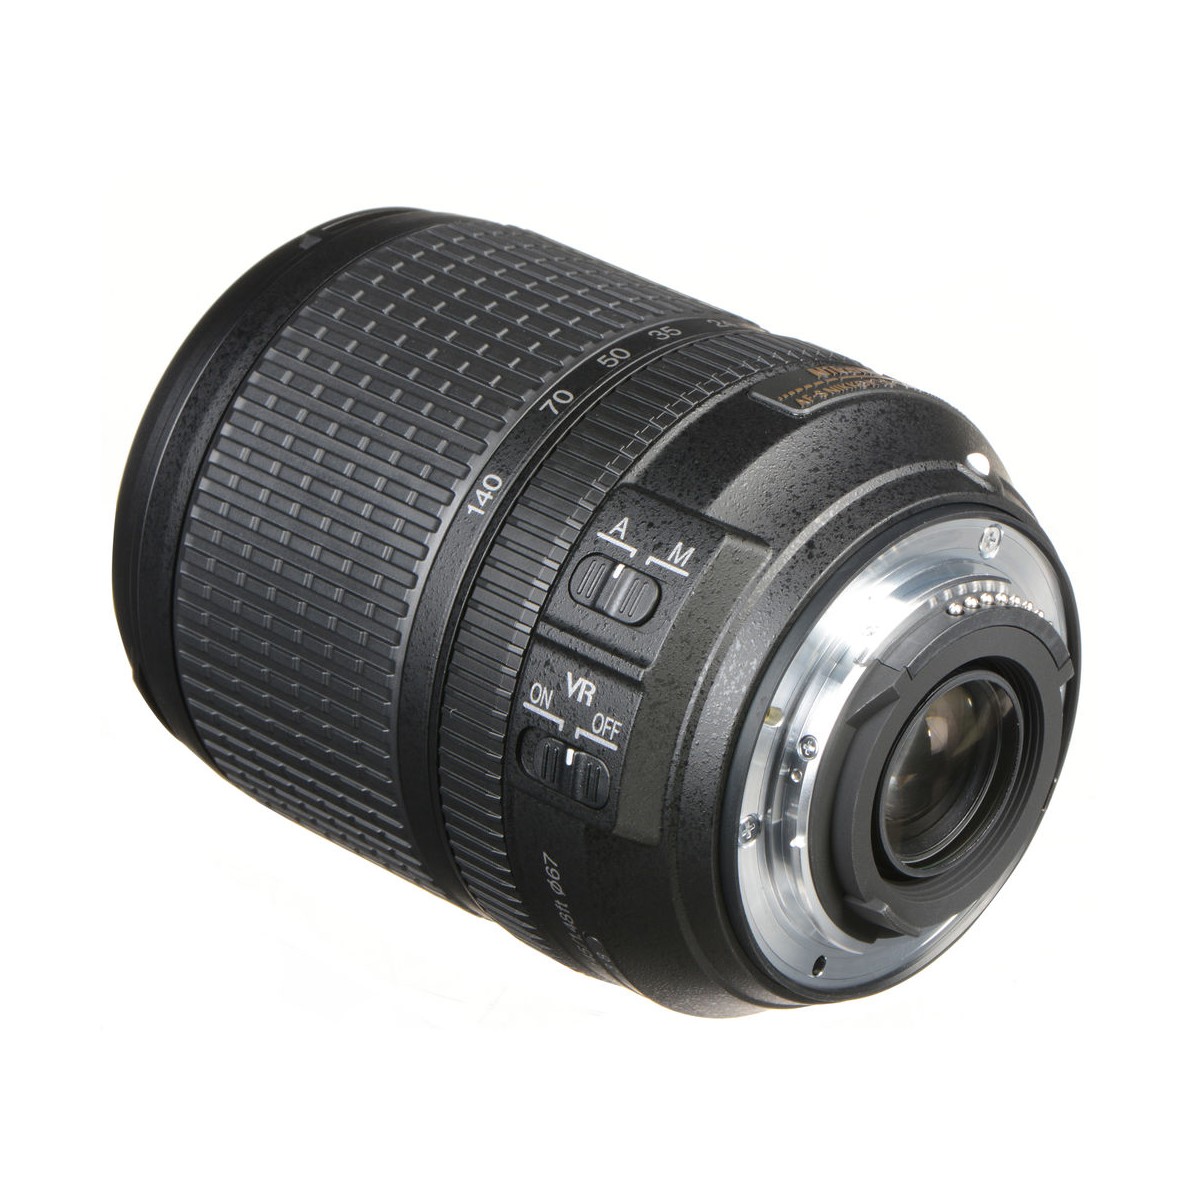 Nikon D5300 + Nikon AF-P DX Nikkor 18-55mm f/3.5-5.6G VR